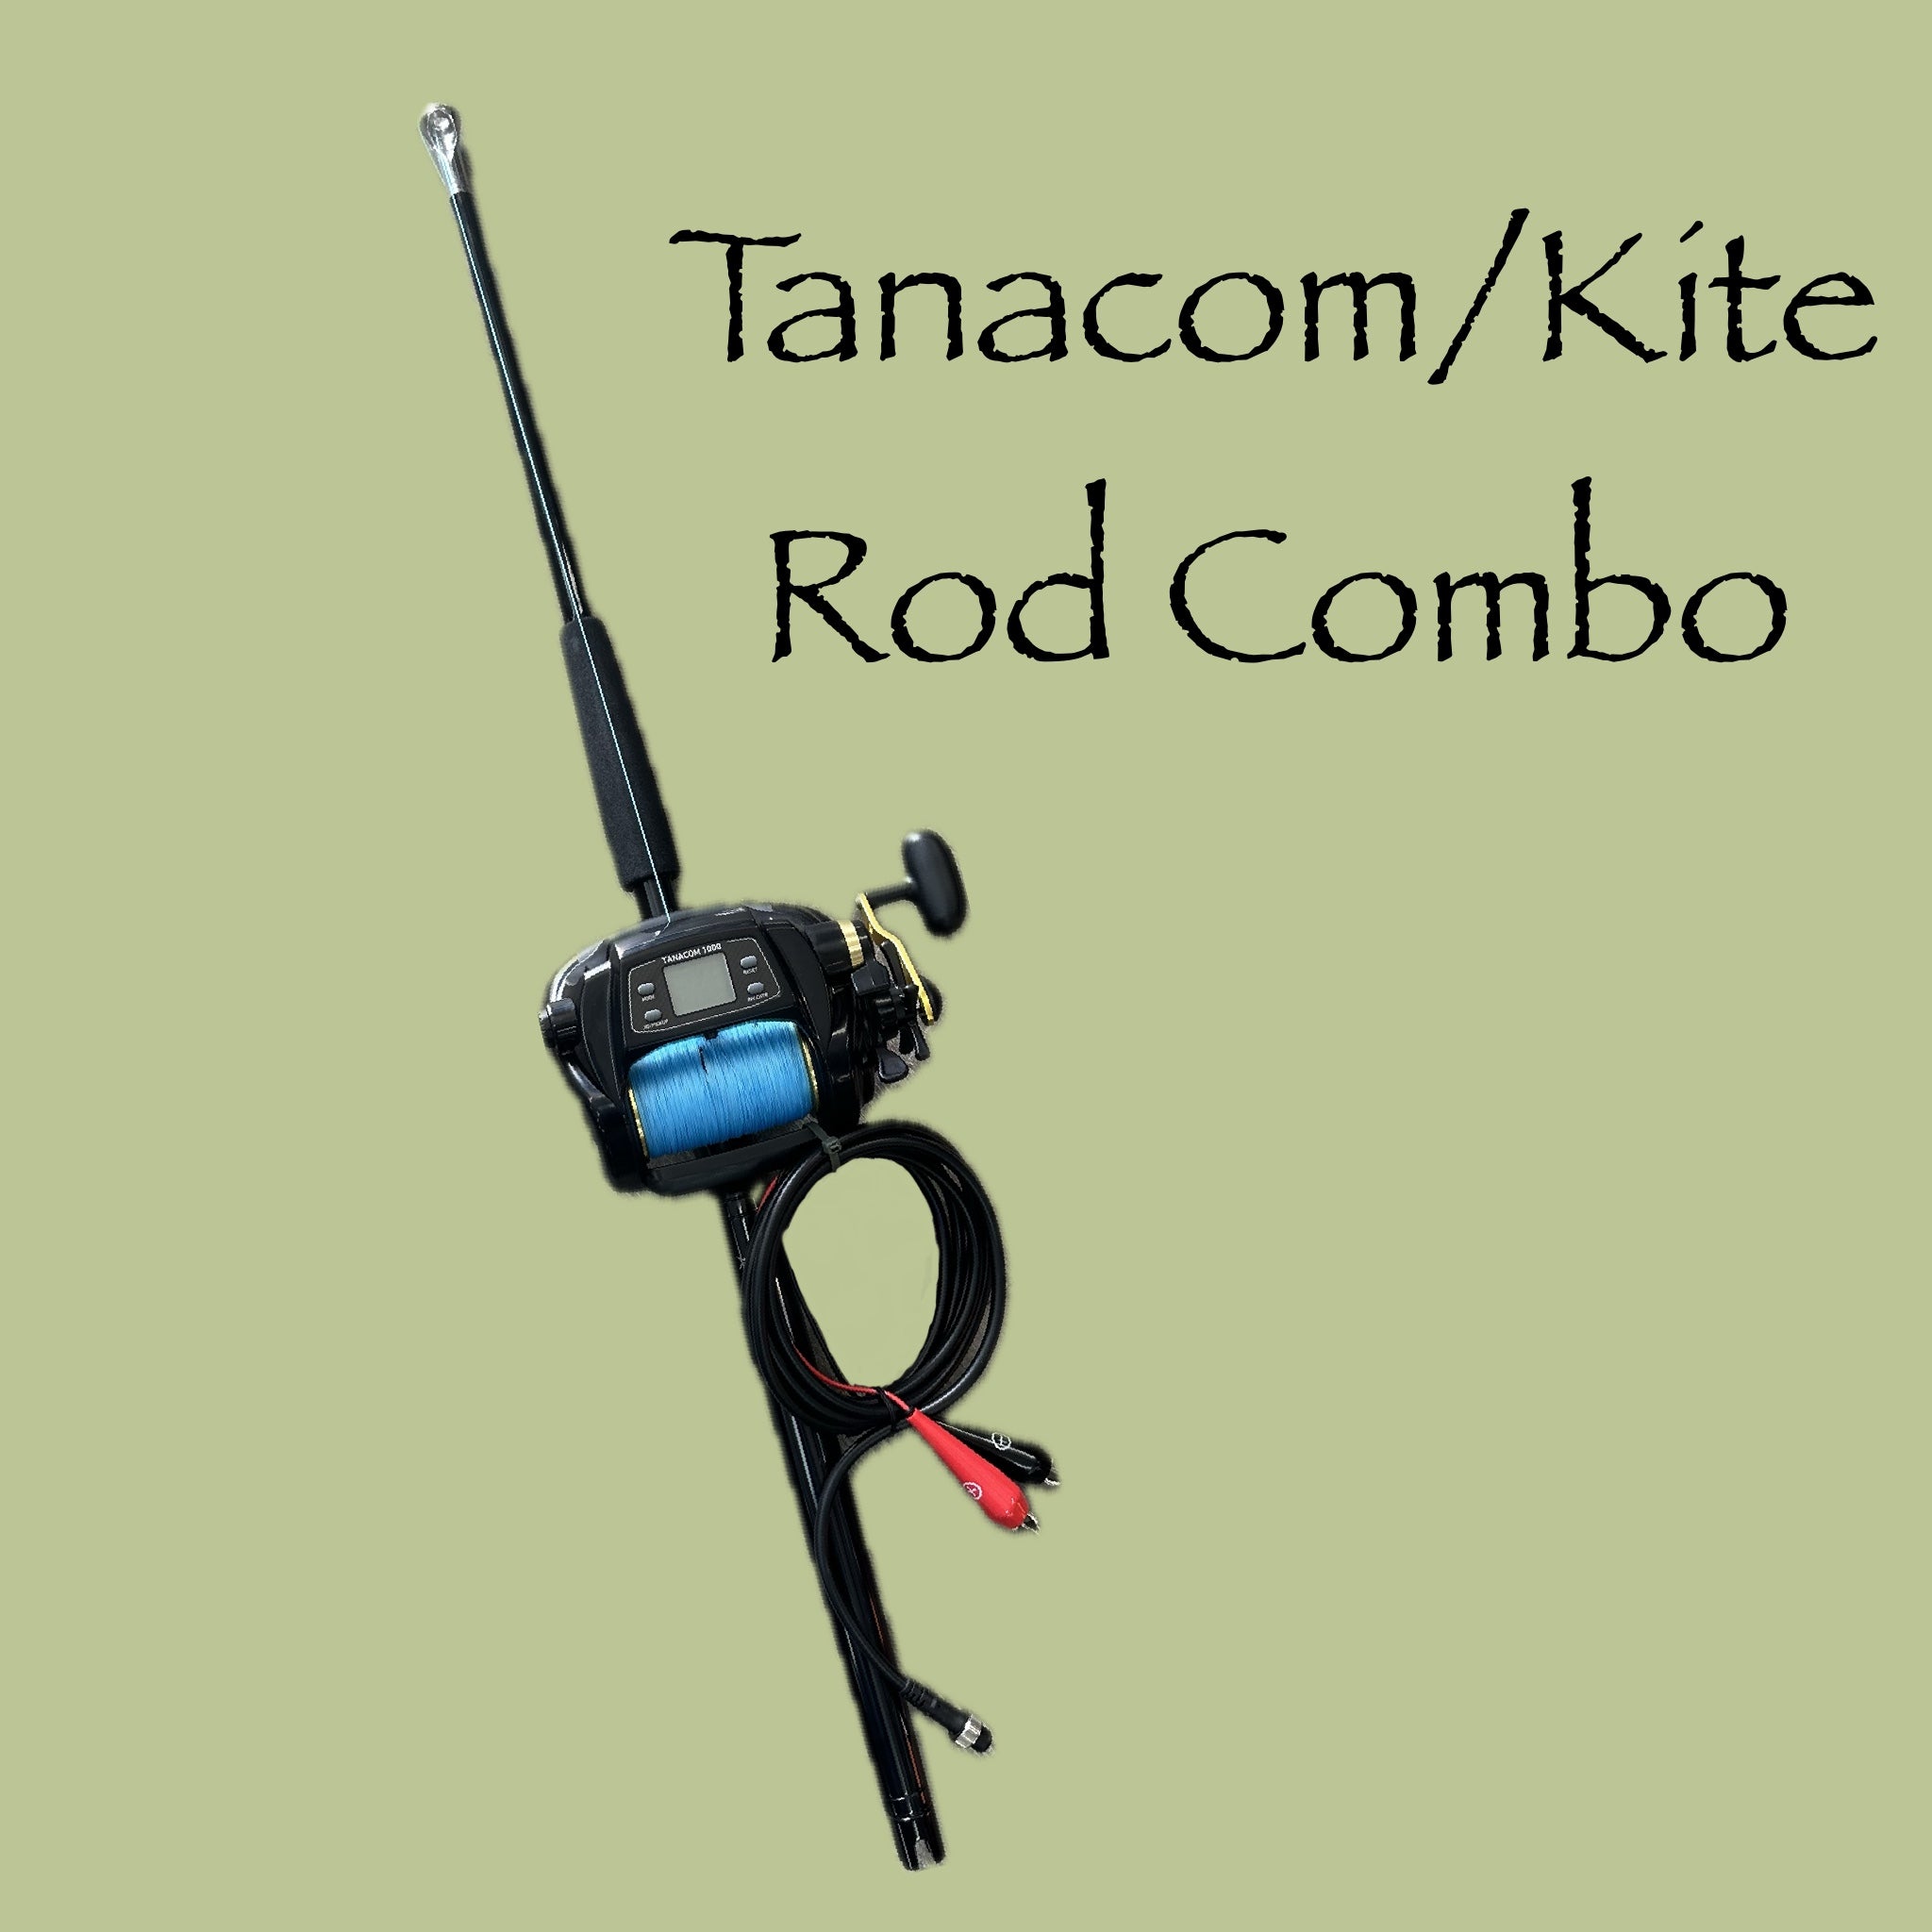 Tanacom/Kite Rod Combo